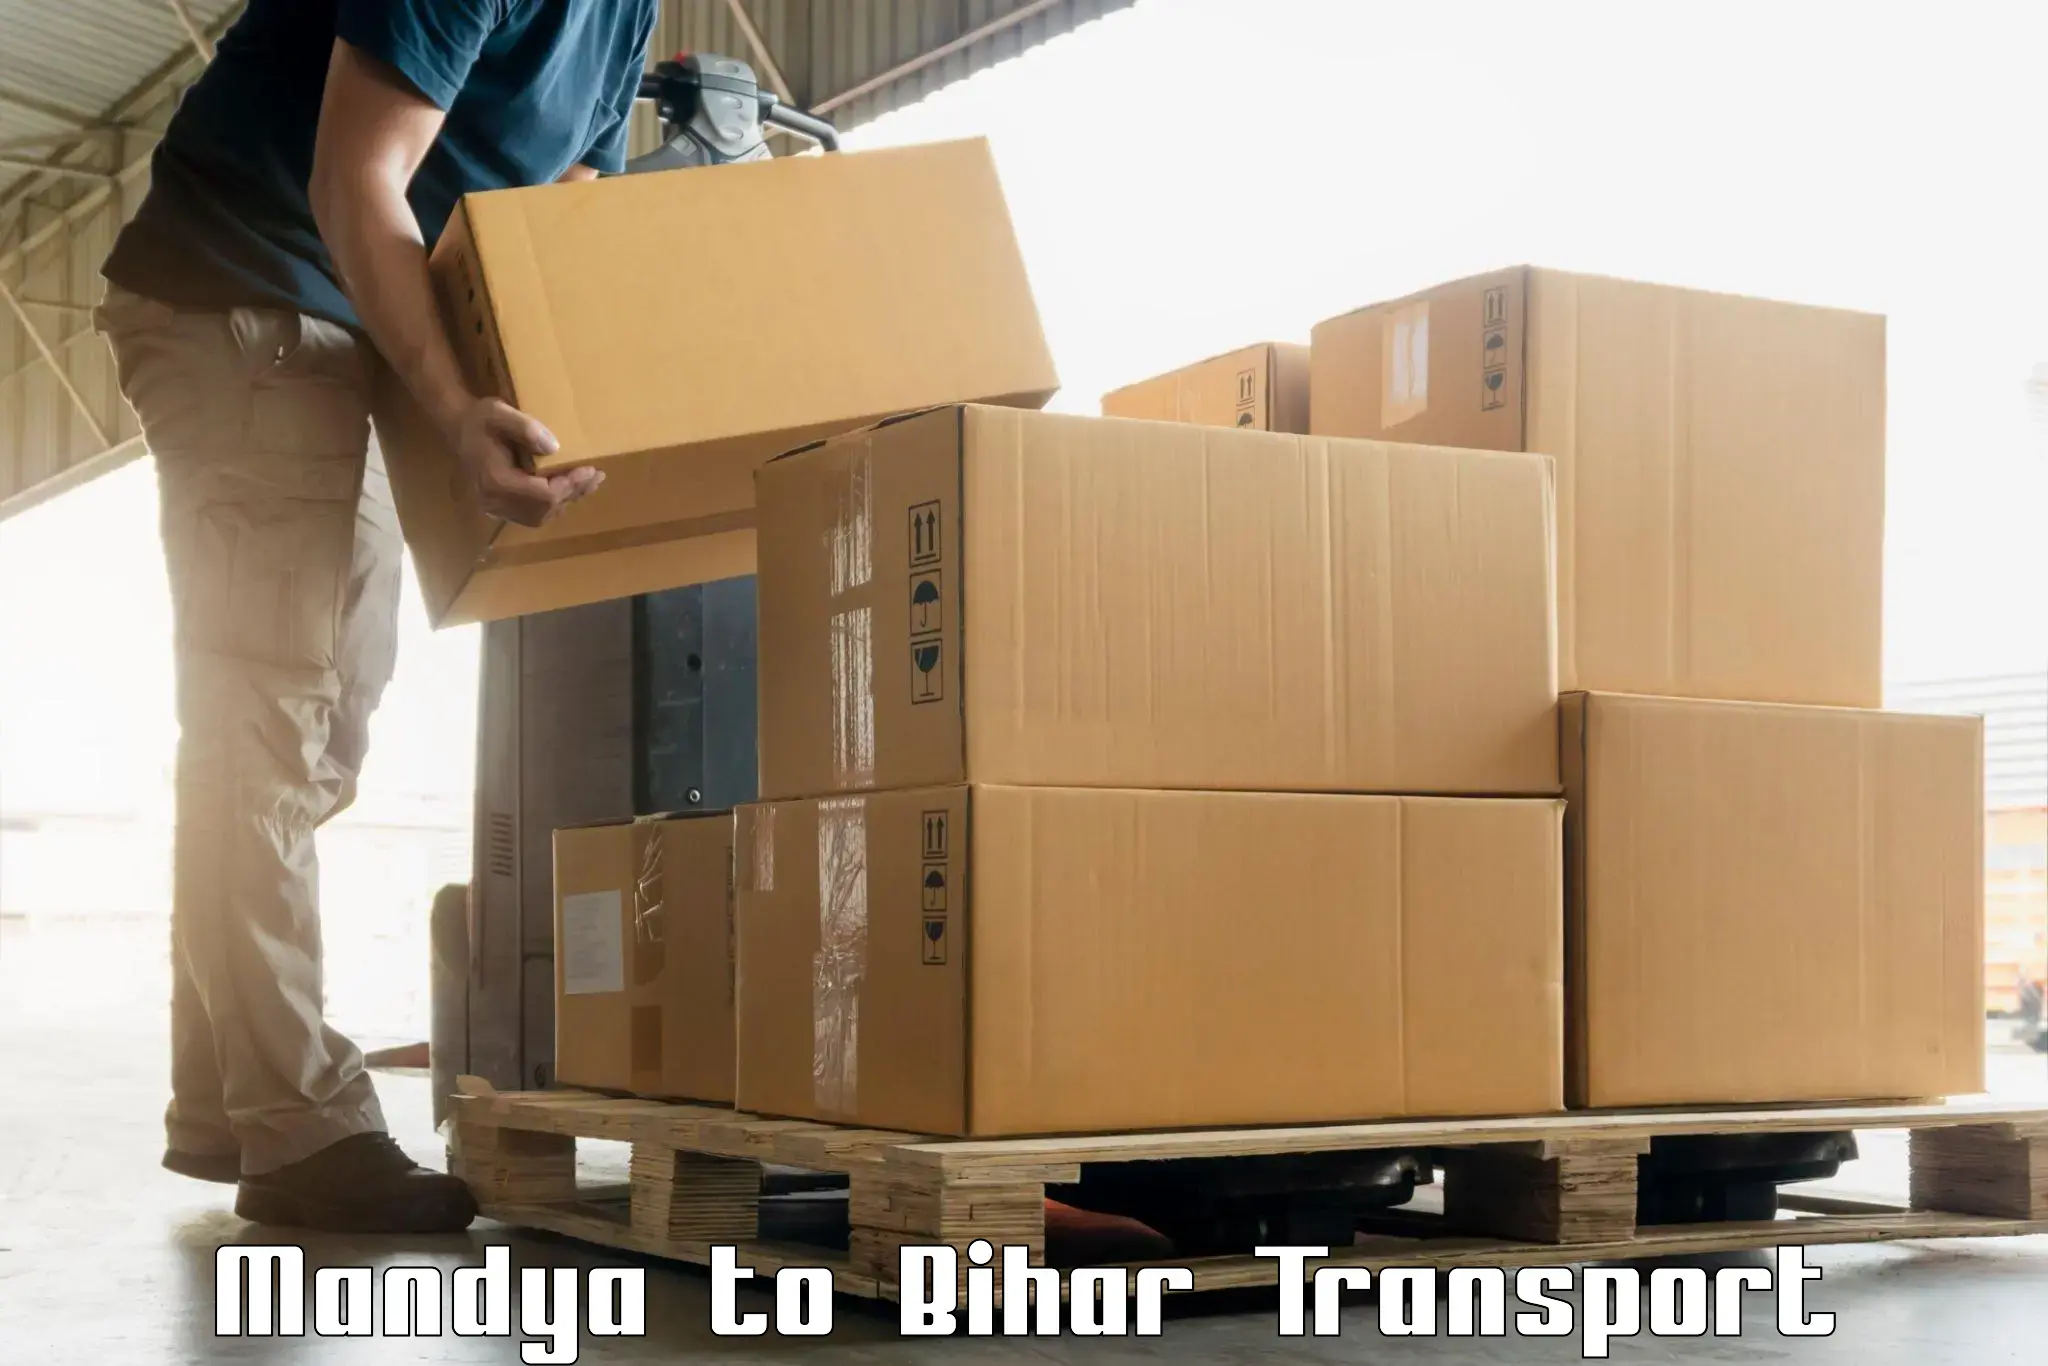 Online transport booking Mandya to Sangrampur